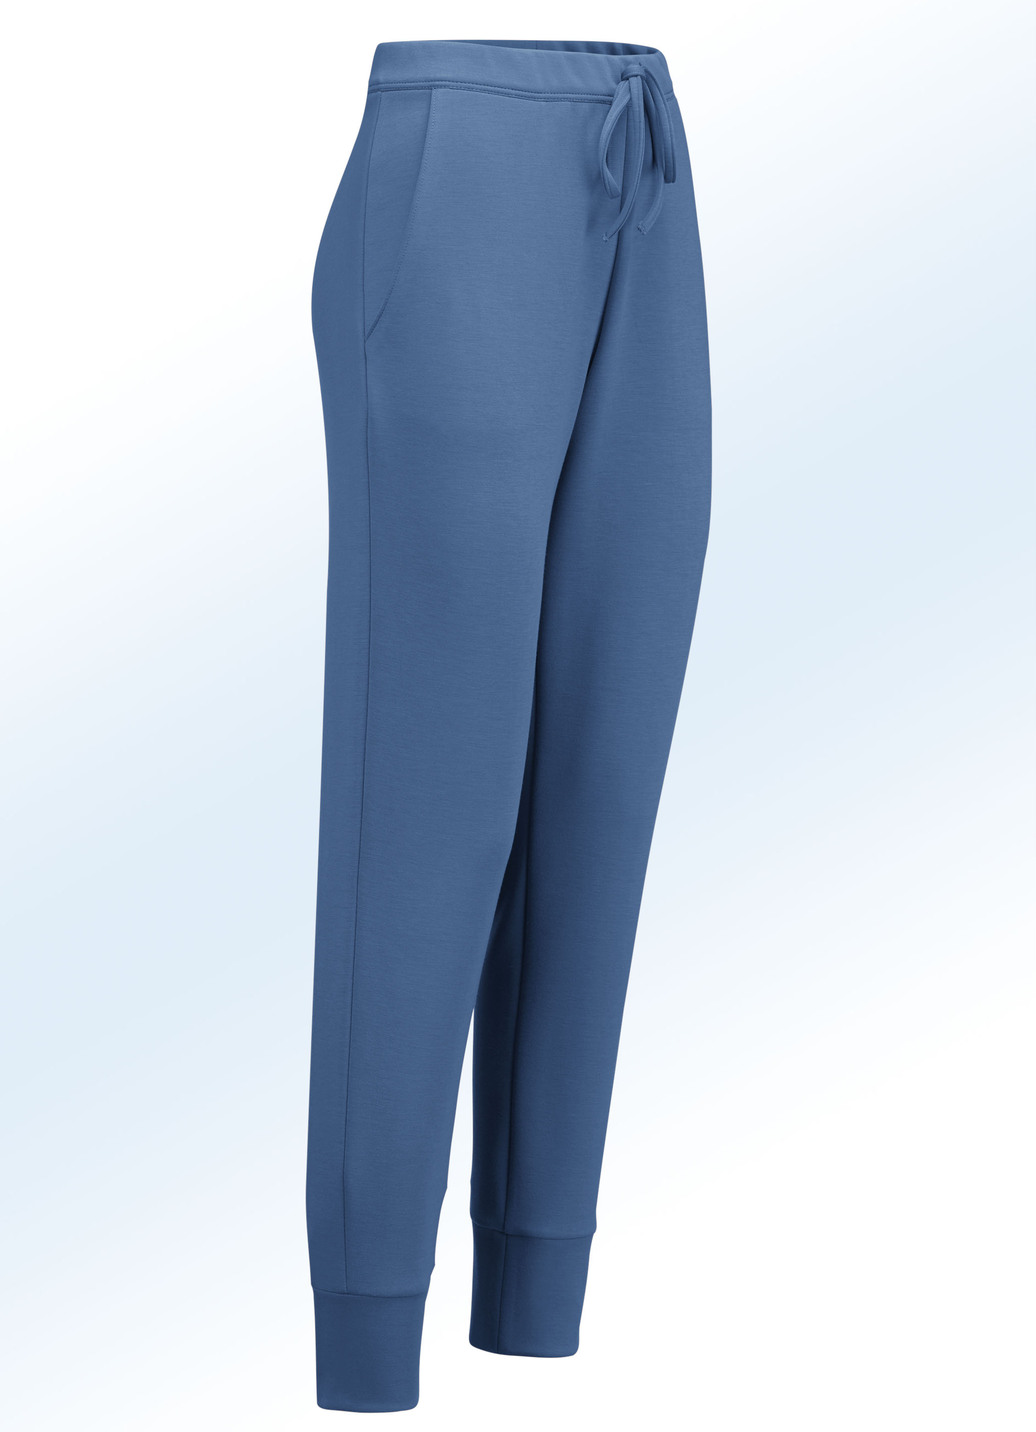 Jerseyhose im stadttauglichen Joggpant-Style, Jeansblau, Größe 38 von KLAUS MODELLE